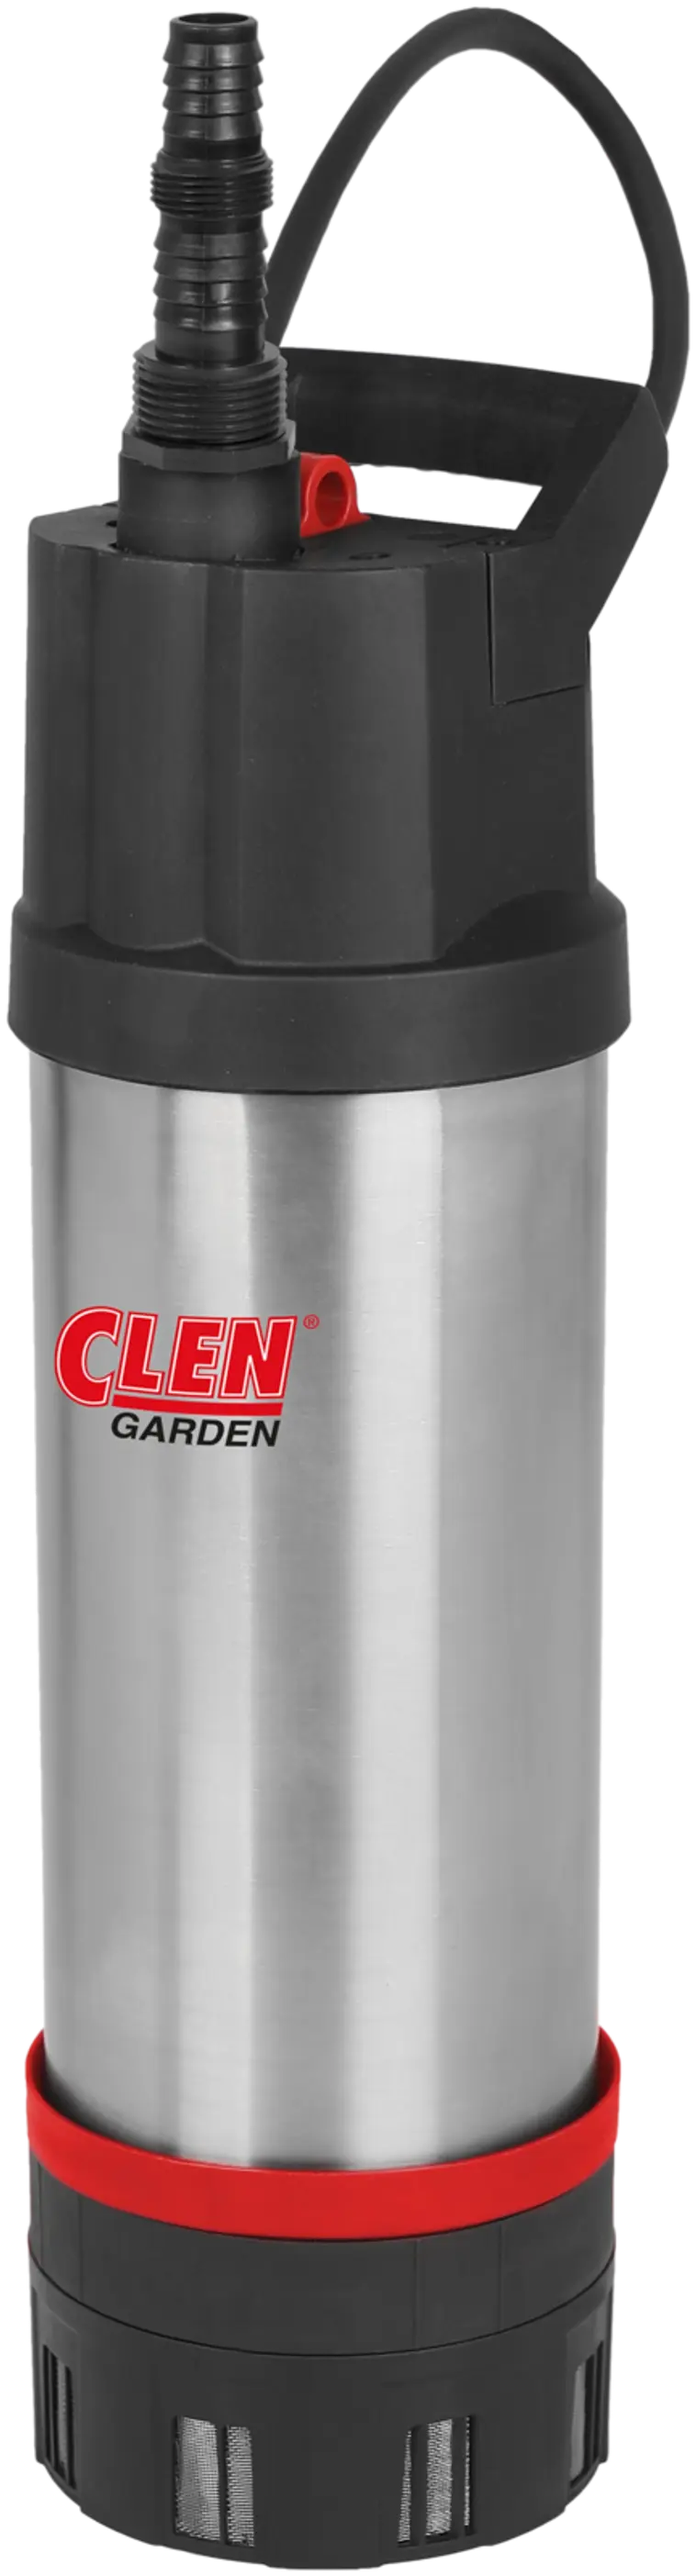 Clen Garden EC 950 Vesiautomaatti | Prisma verkkokauppa